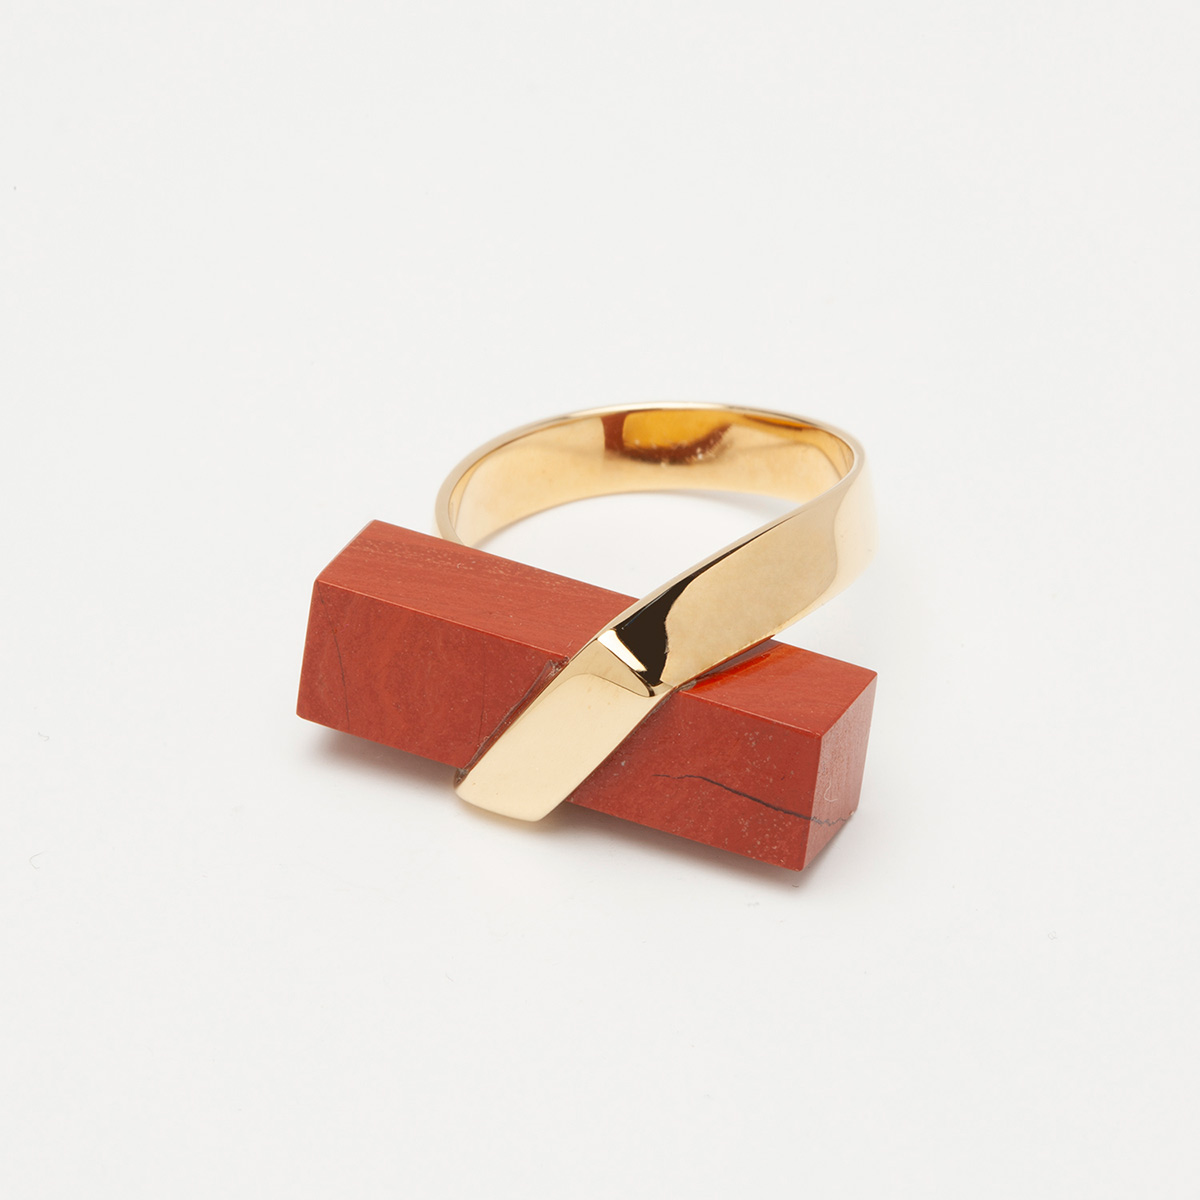 anillo artesanal Yei de oro de 9k o 18k y jaspe rojo 2 diseñado por Belen Bajo